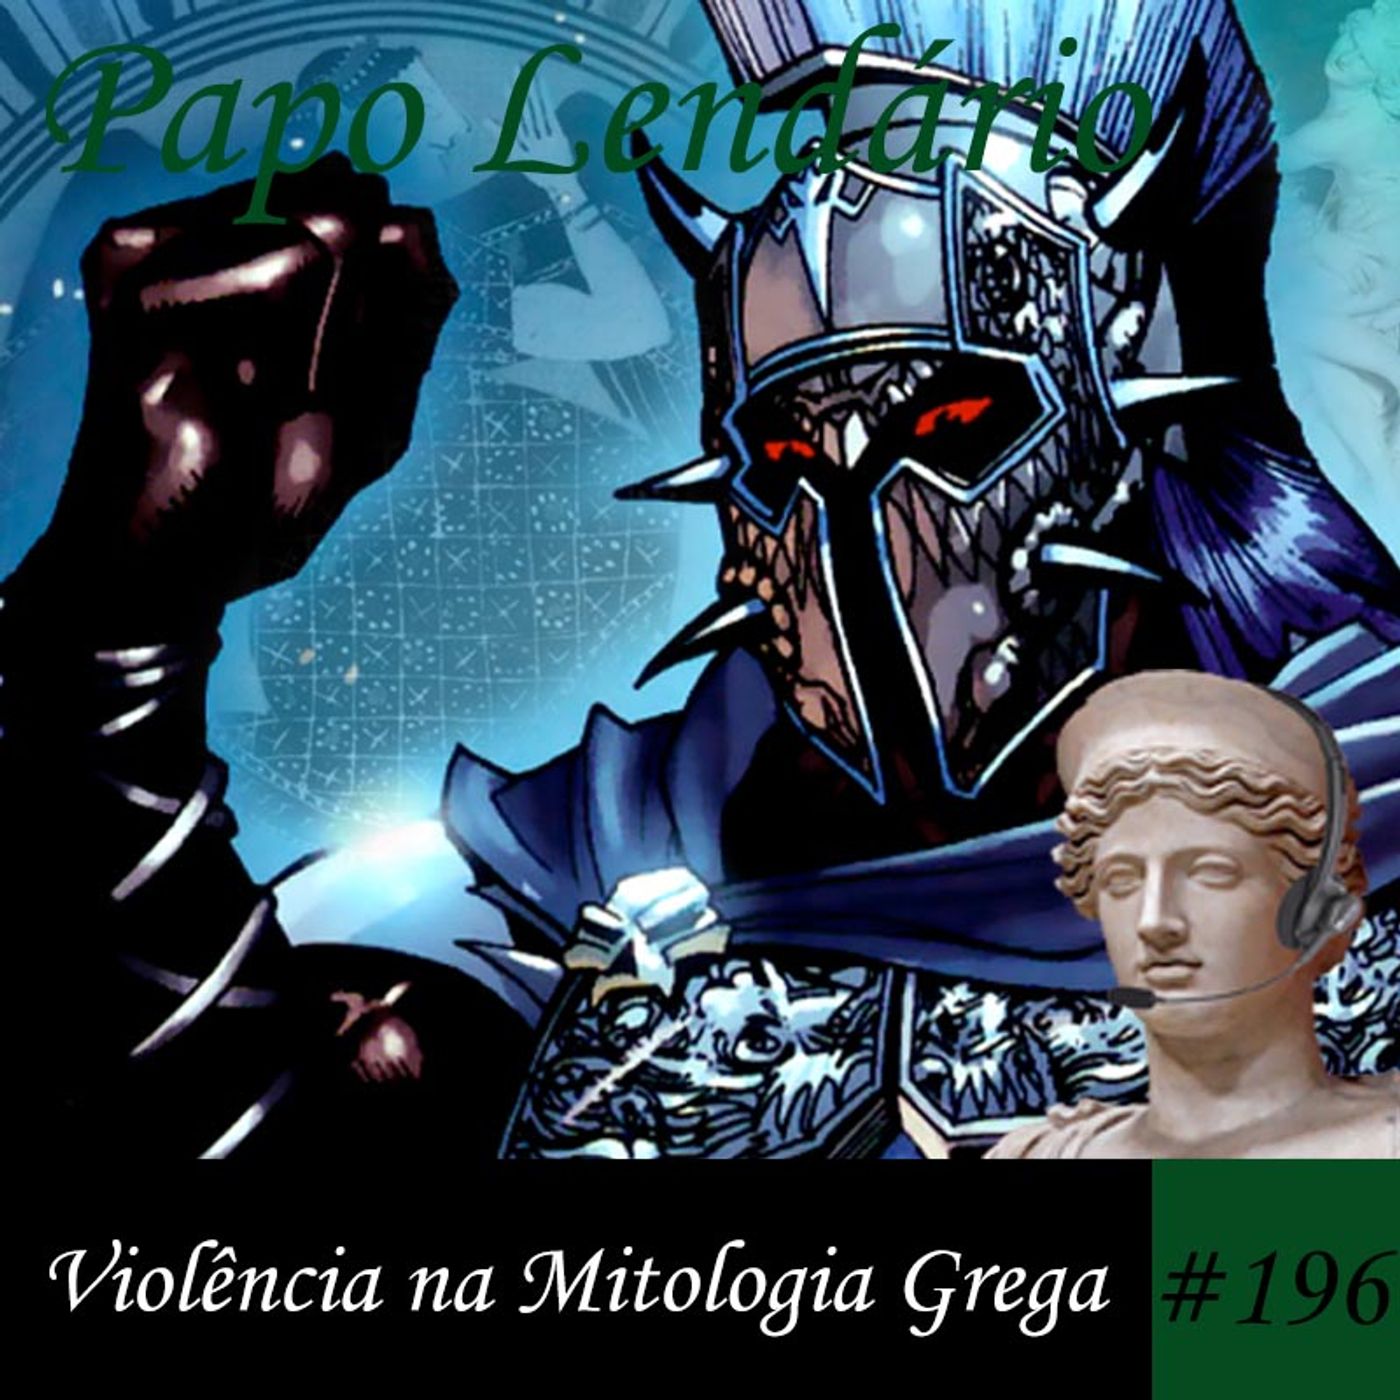 Papo Lendário #196 – Violência na Mitologia Grega